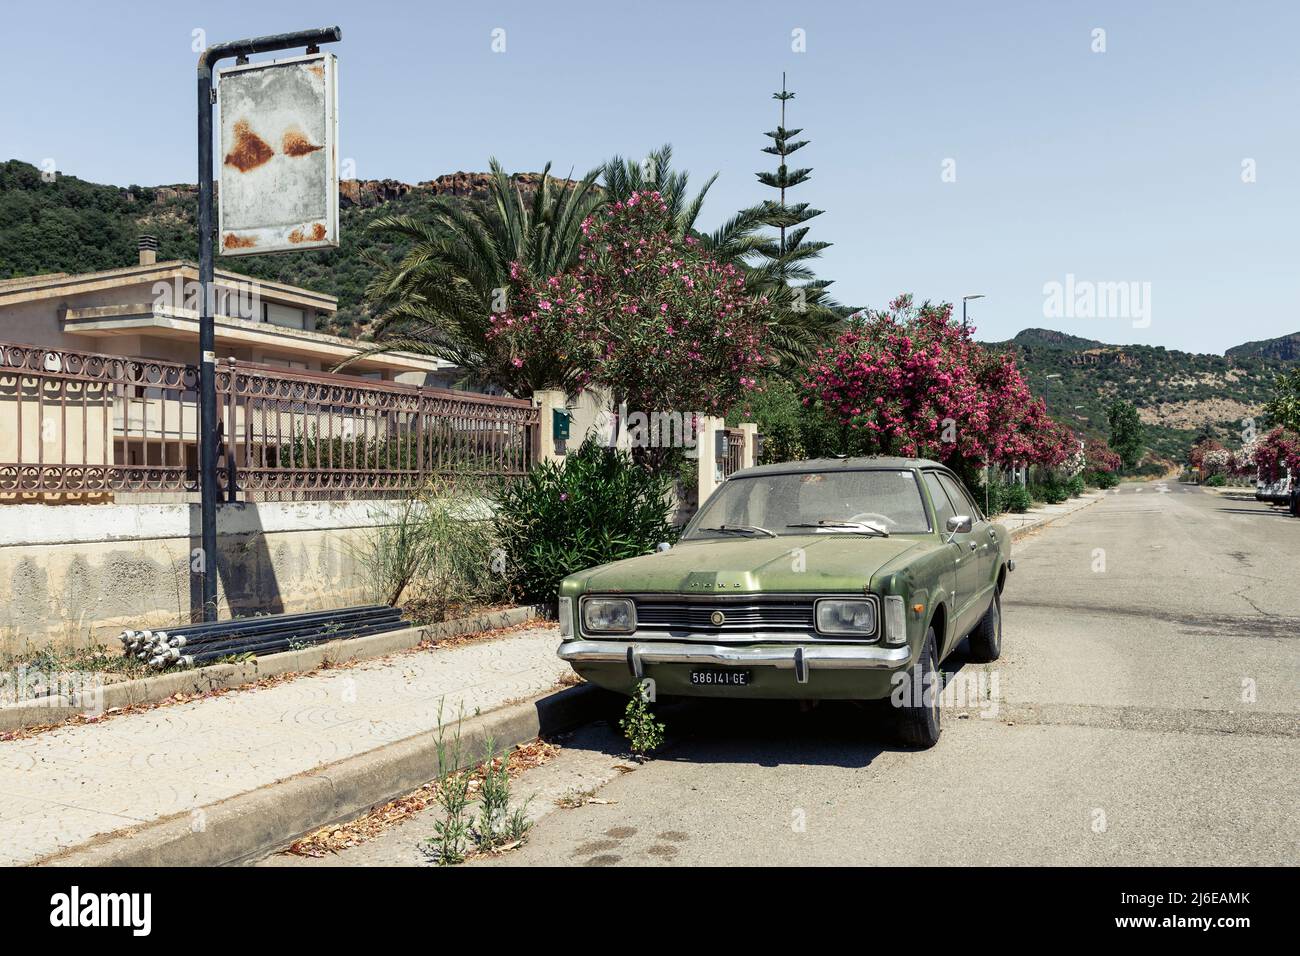 Classic Car und Retro Design - alter, staubiger, verwitterter und rostiger Ford Taunus, der in der hellen Mittagssonne Bosa, Sardinien, am Straßenrand geparkt ist Stockfoto